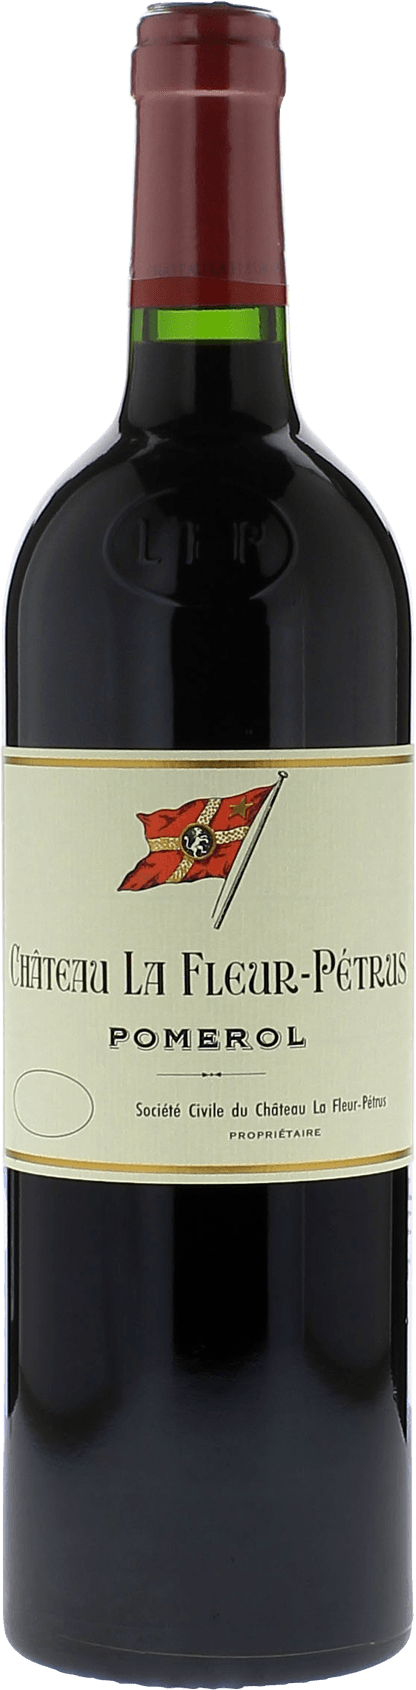 La fleur petrus 2011  Pomerol, Bordeaux rouge